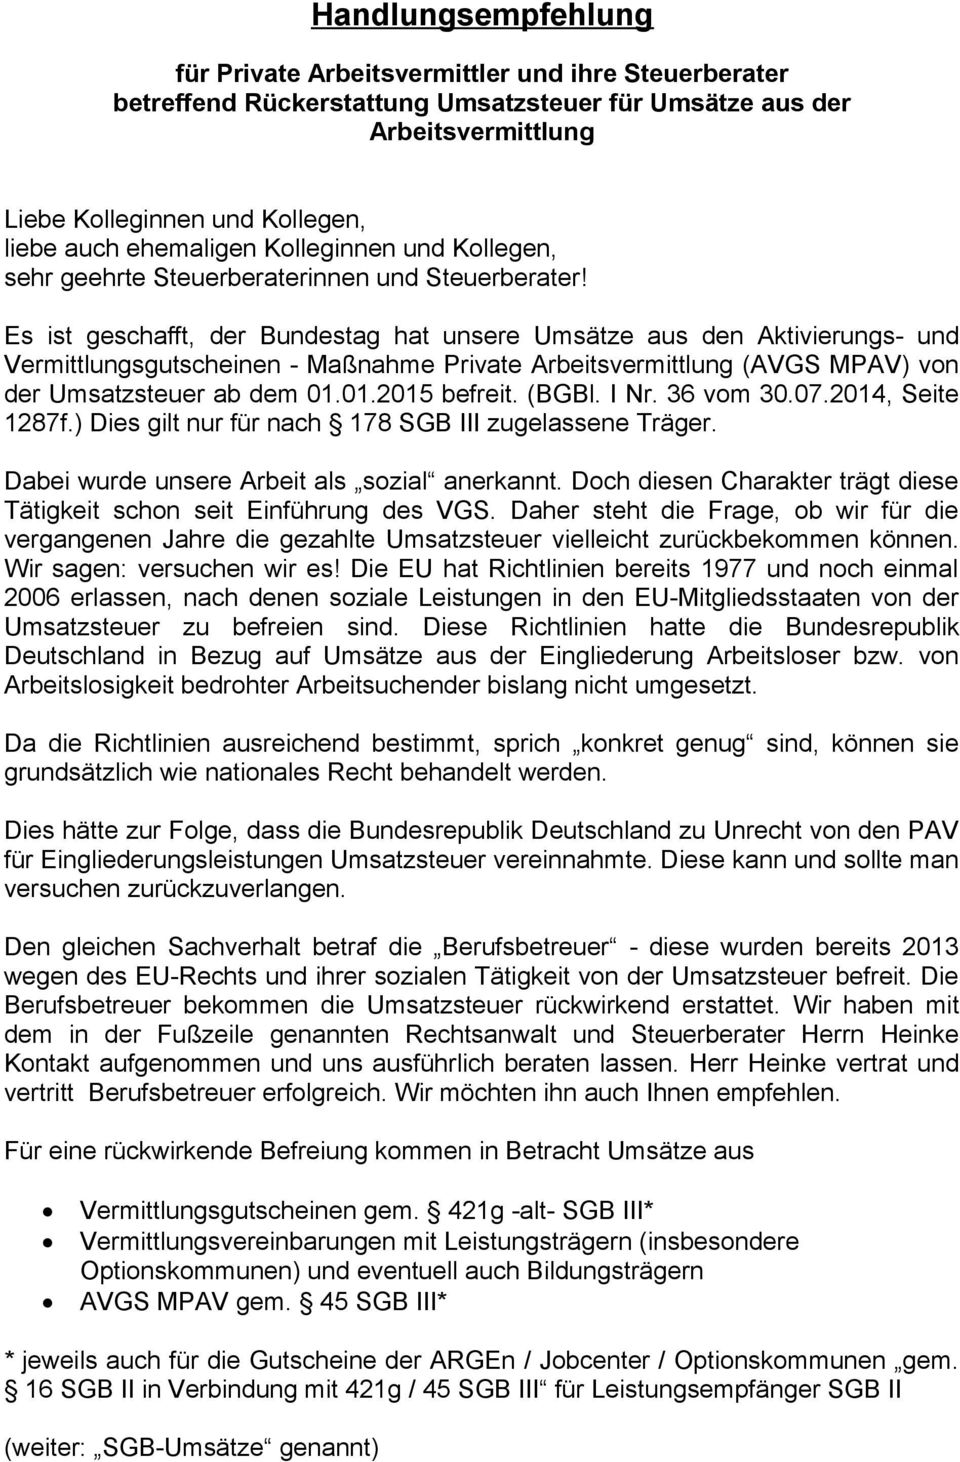 Es ist geschafft, der Bundestag hat unsere Umsätze aus den Aktivierungs- und Vermittlungsgutscheinen - Maßnahme Private Arbeitsvermittlung (AVGS MPAV) von der Umsatzsteuer ab dem 01.01.2015 befreit.